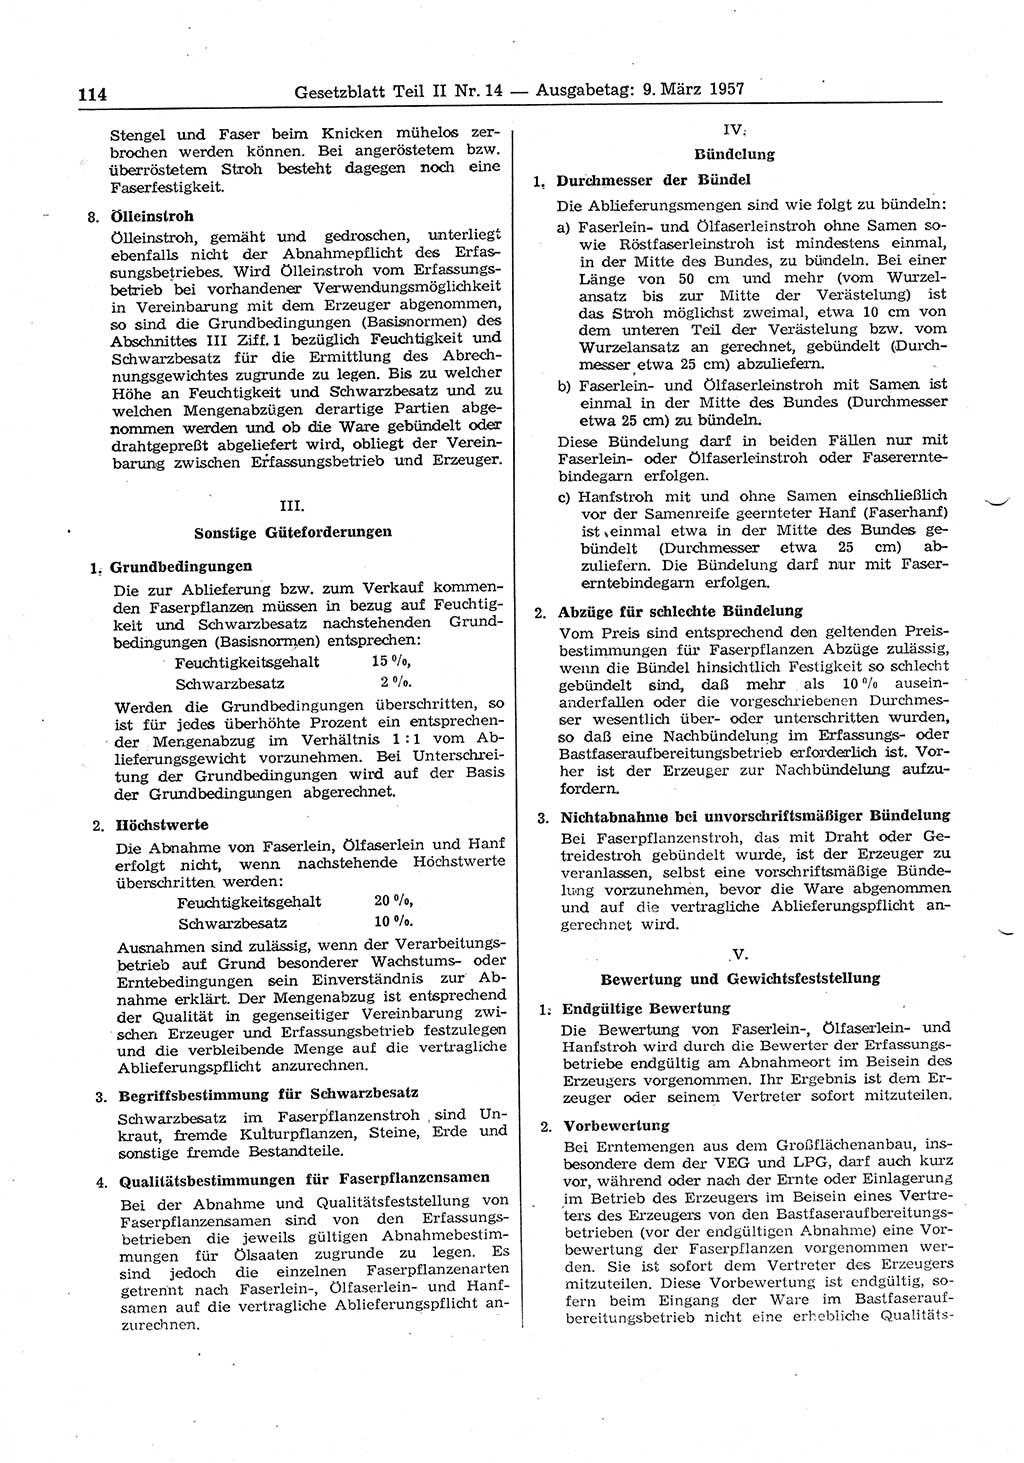 Gesetzblatt (GBl.) der Deutschen Demokratischen Republik (DDR) Teil ⅠⅠ 1957, Seite 114 (GBl. DDR ⅠⅠ 1957, S. 114)